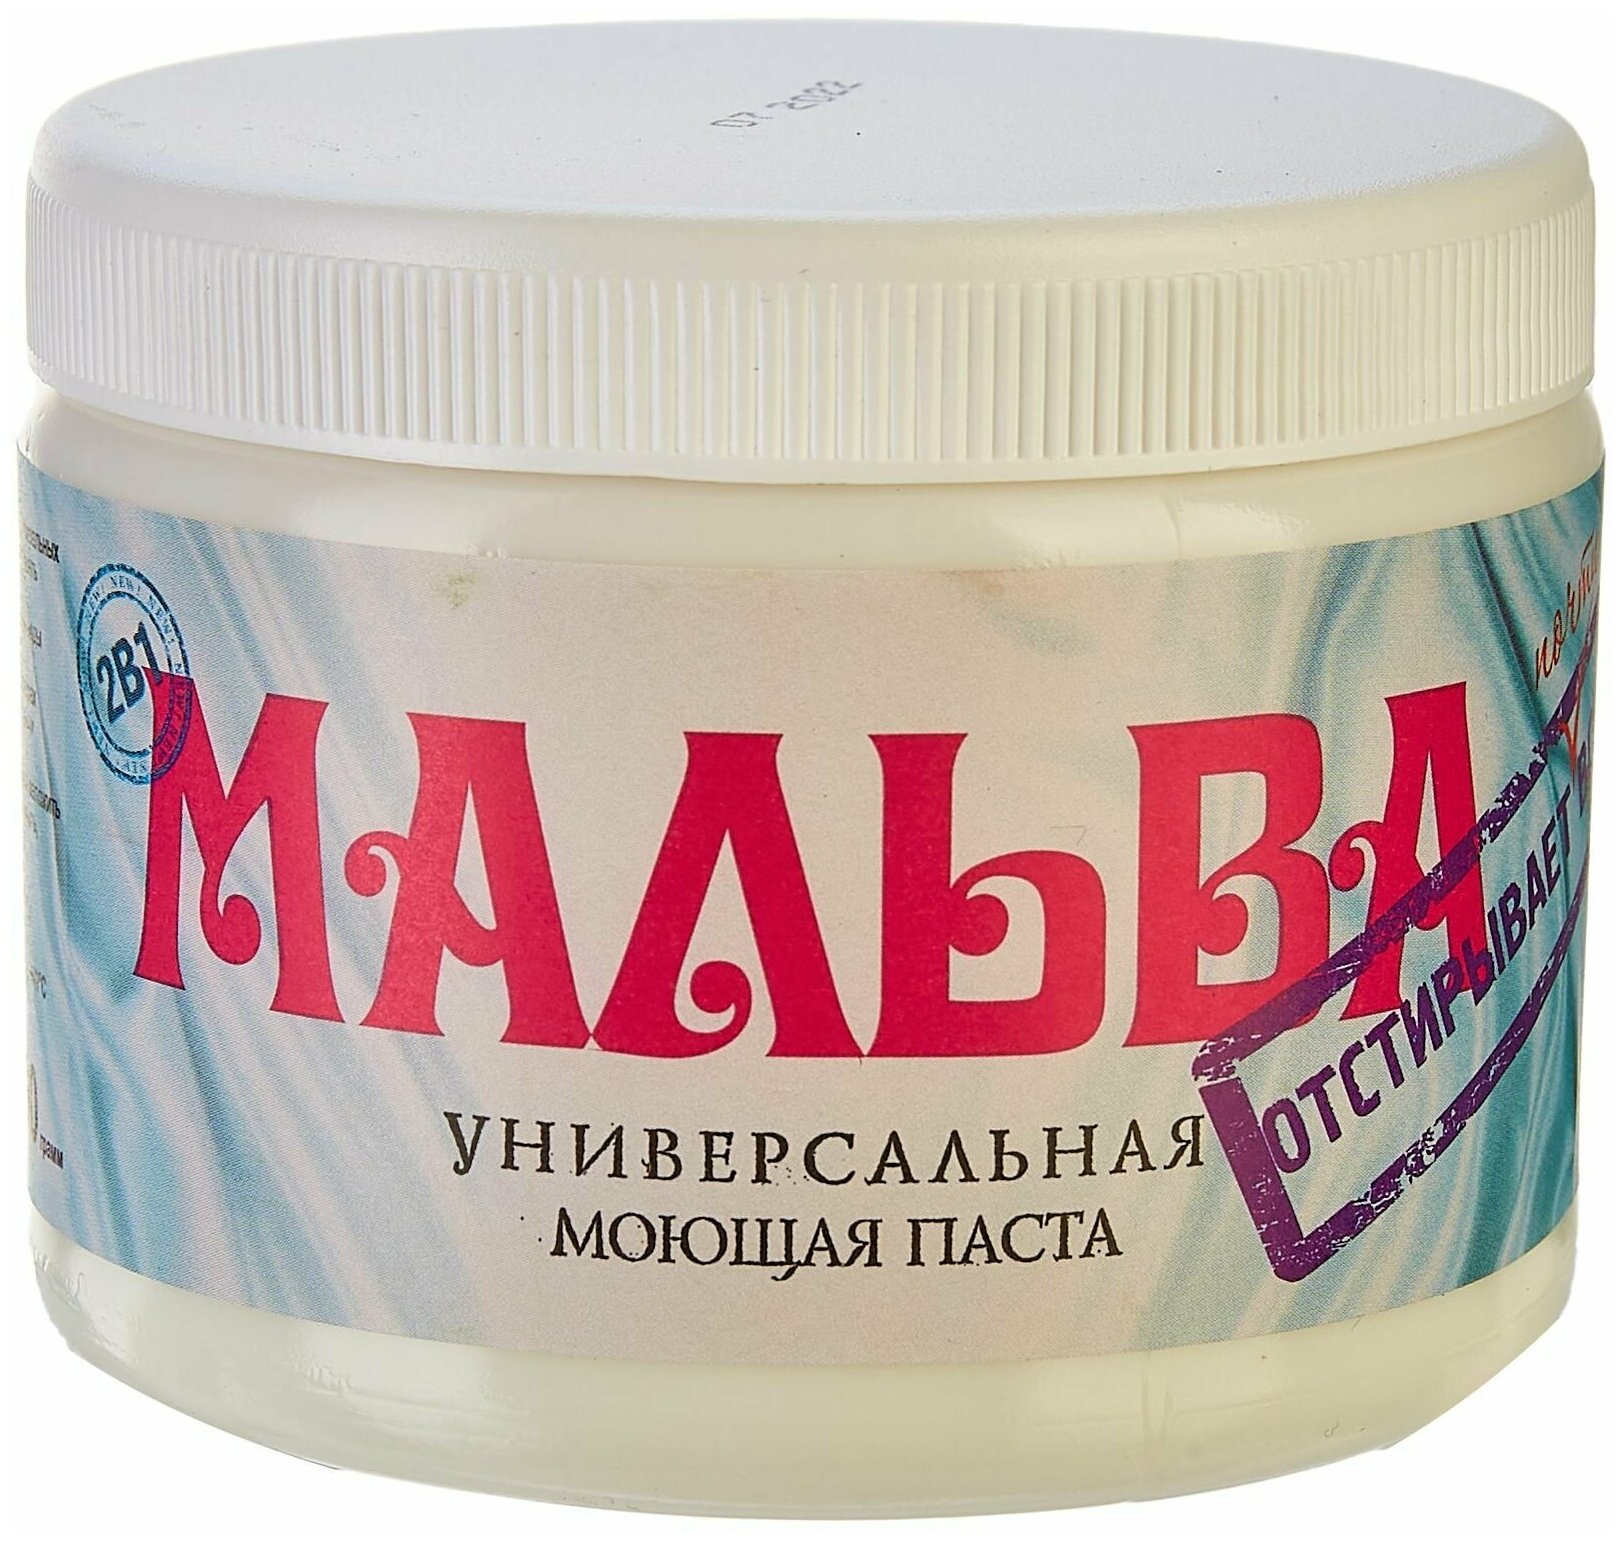 Паста моющая универсальная "Мальва", средство для стирки, 500 грамм, 1 шт. — купить в интернет-магазине по низкой цене на Яндекс Маркете